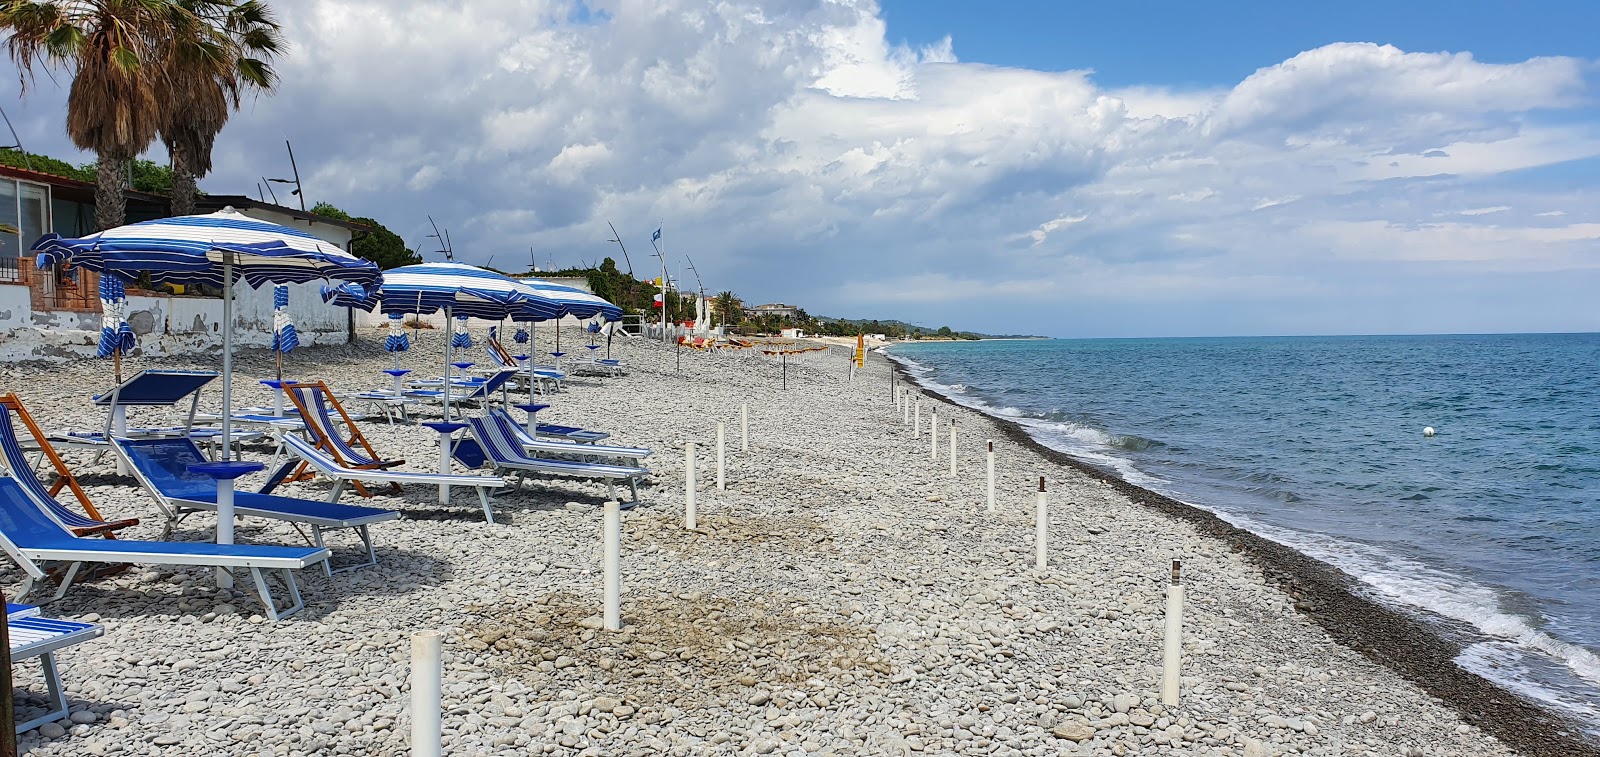 Foto af Trebisacce beach - populært sted blandt afslapningskendere